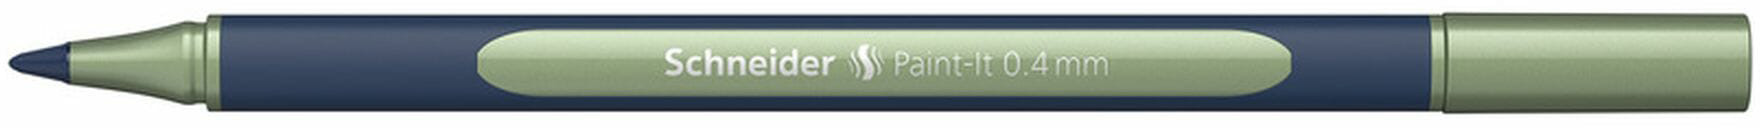 SCHNEIDER Roller Paint-it ML050011035 vintage green metallic